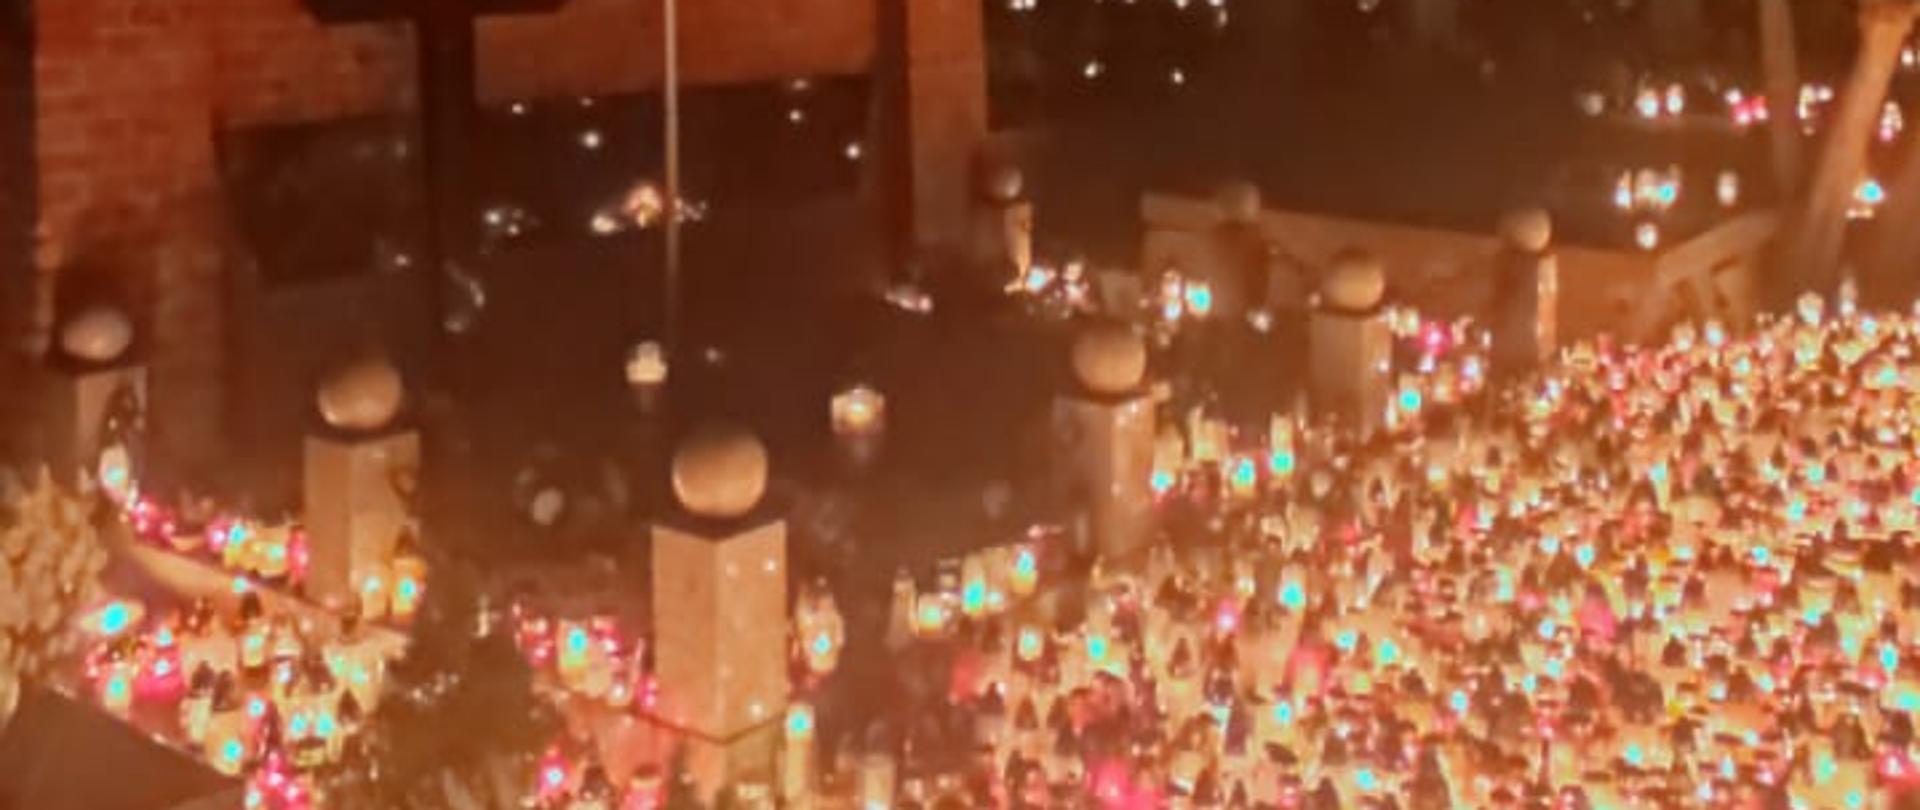 Zdjęcie przedstawia różnokolorowe zapalone znicze ustawione obok siebie na cmentarzu. Znicze różnych wielkości, w kolorach białym, czerwonym oraz żółtym. Zdjęcie wykonane w porze nocnej.